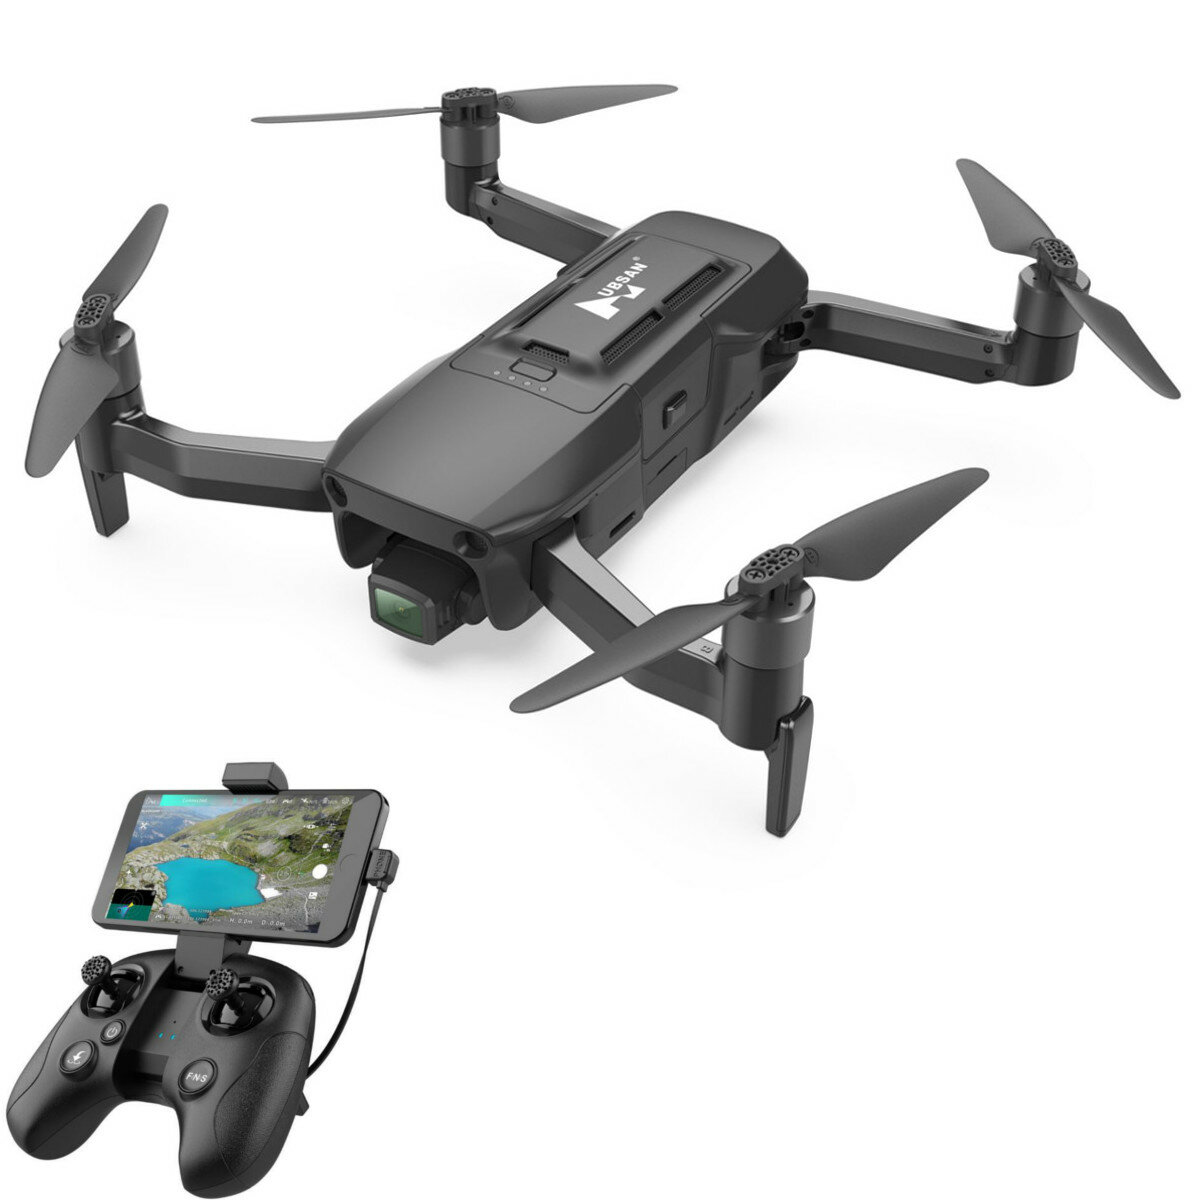 Hubsan SchwarzHawk1 GPS 9KM FPV Unterstützung 4G mit 4K 30fps HD Kamera, 3-Achsen-Gimbal, 37min Flugzeit, faltbarer RC Drohne Quadcopter RTF mit 2 Batterien